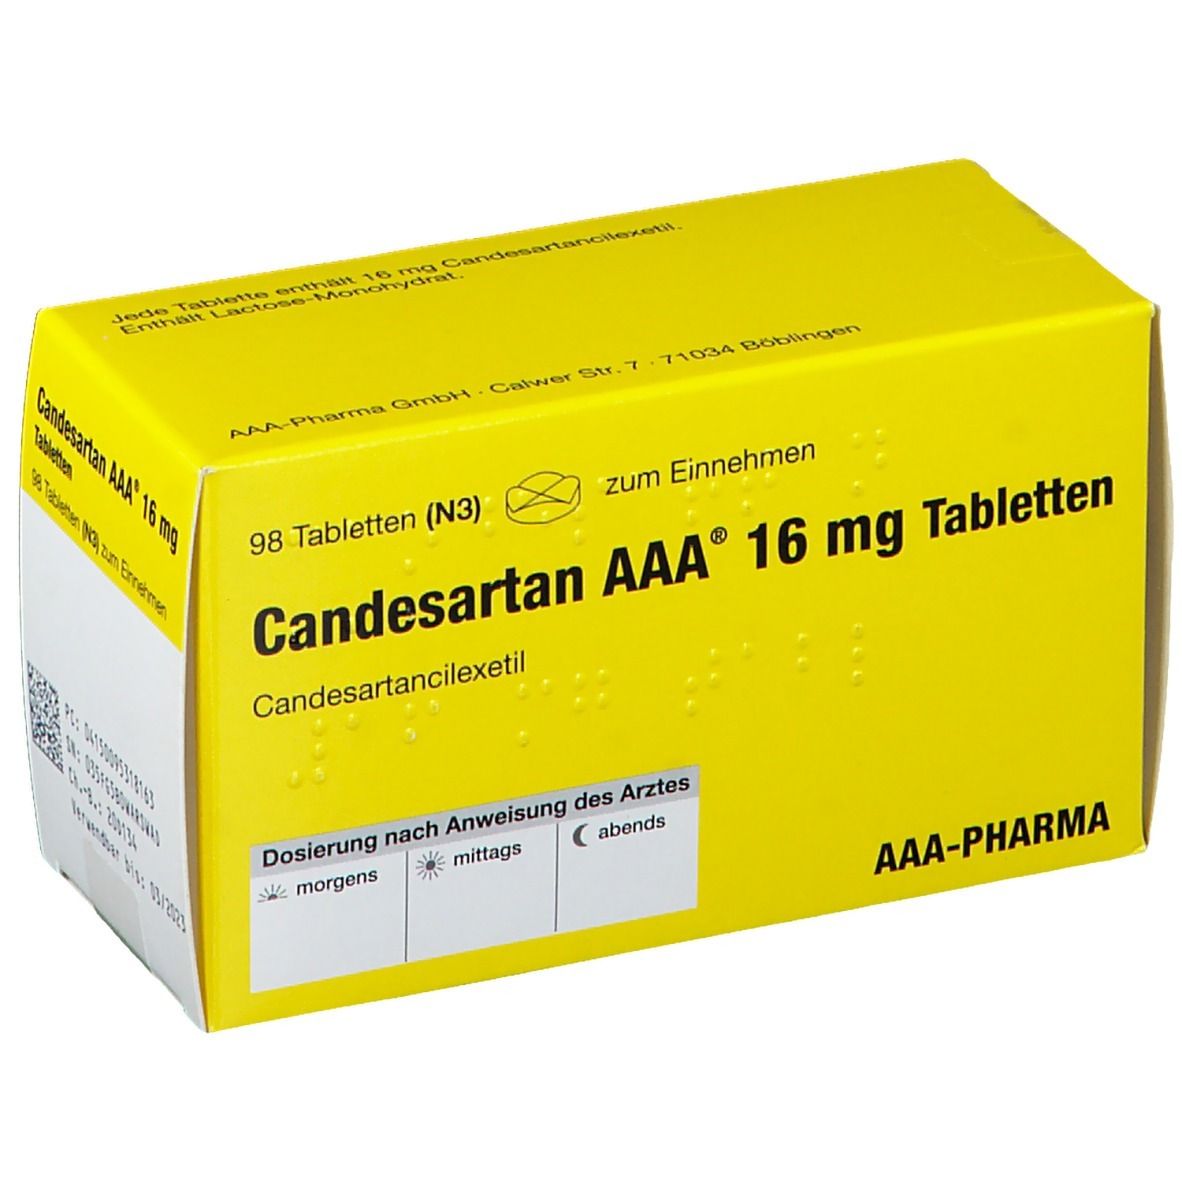 Candesartan AAA® 16Mg